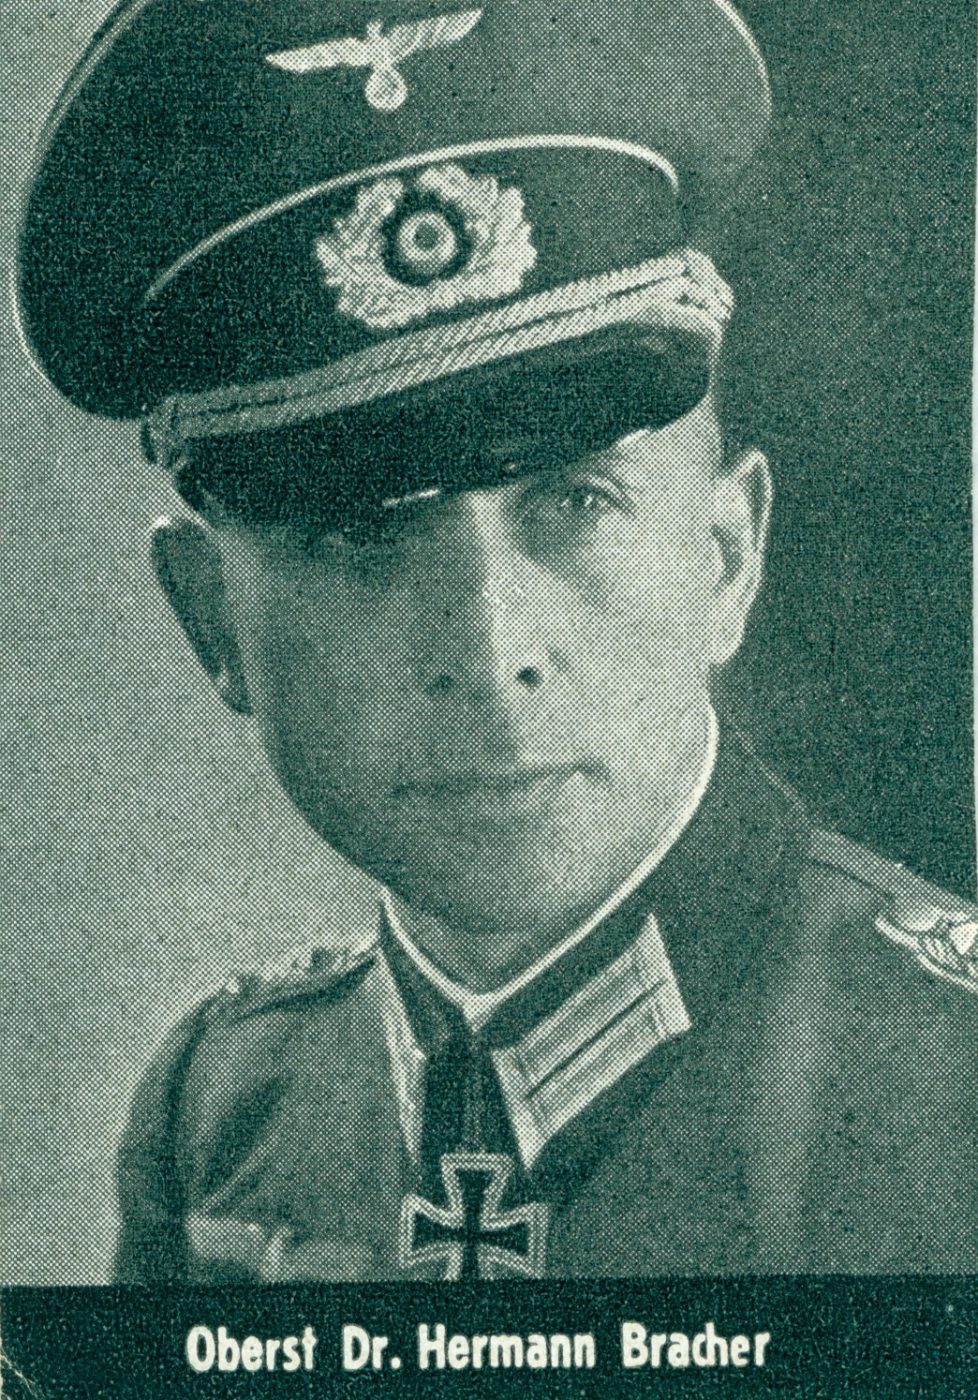 1943_Otto Pfaender Jr.´s Chef Oberst Dr. Hermann Bracher